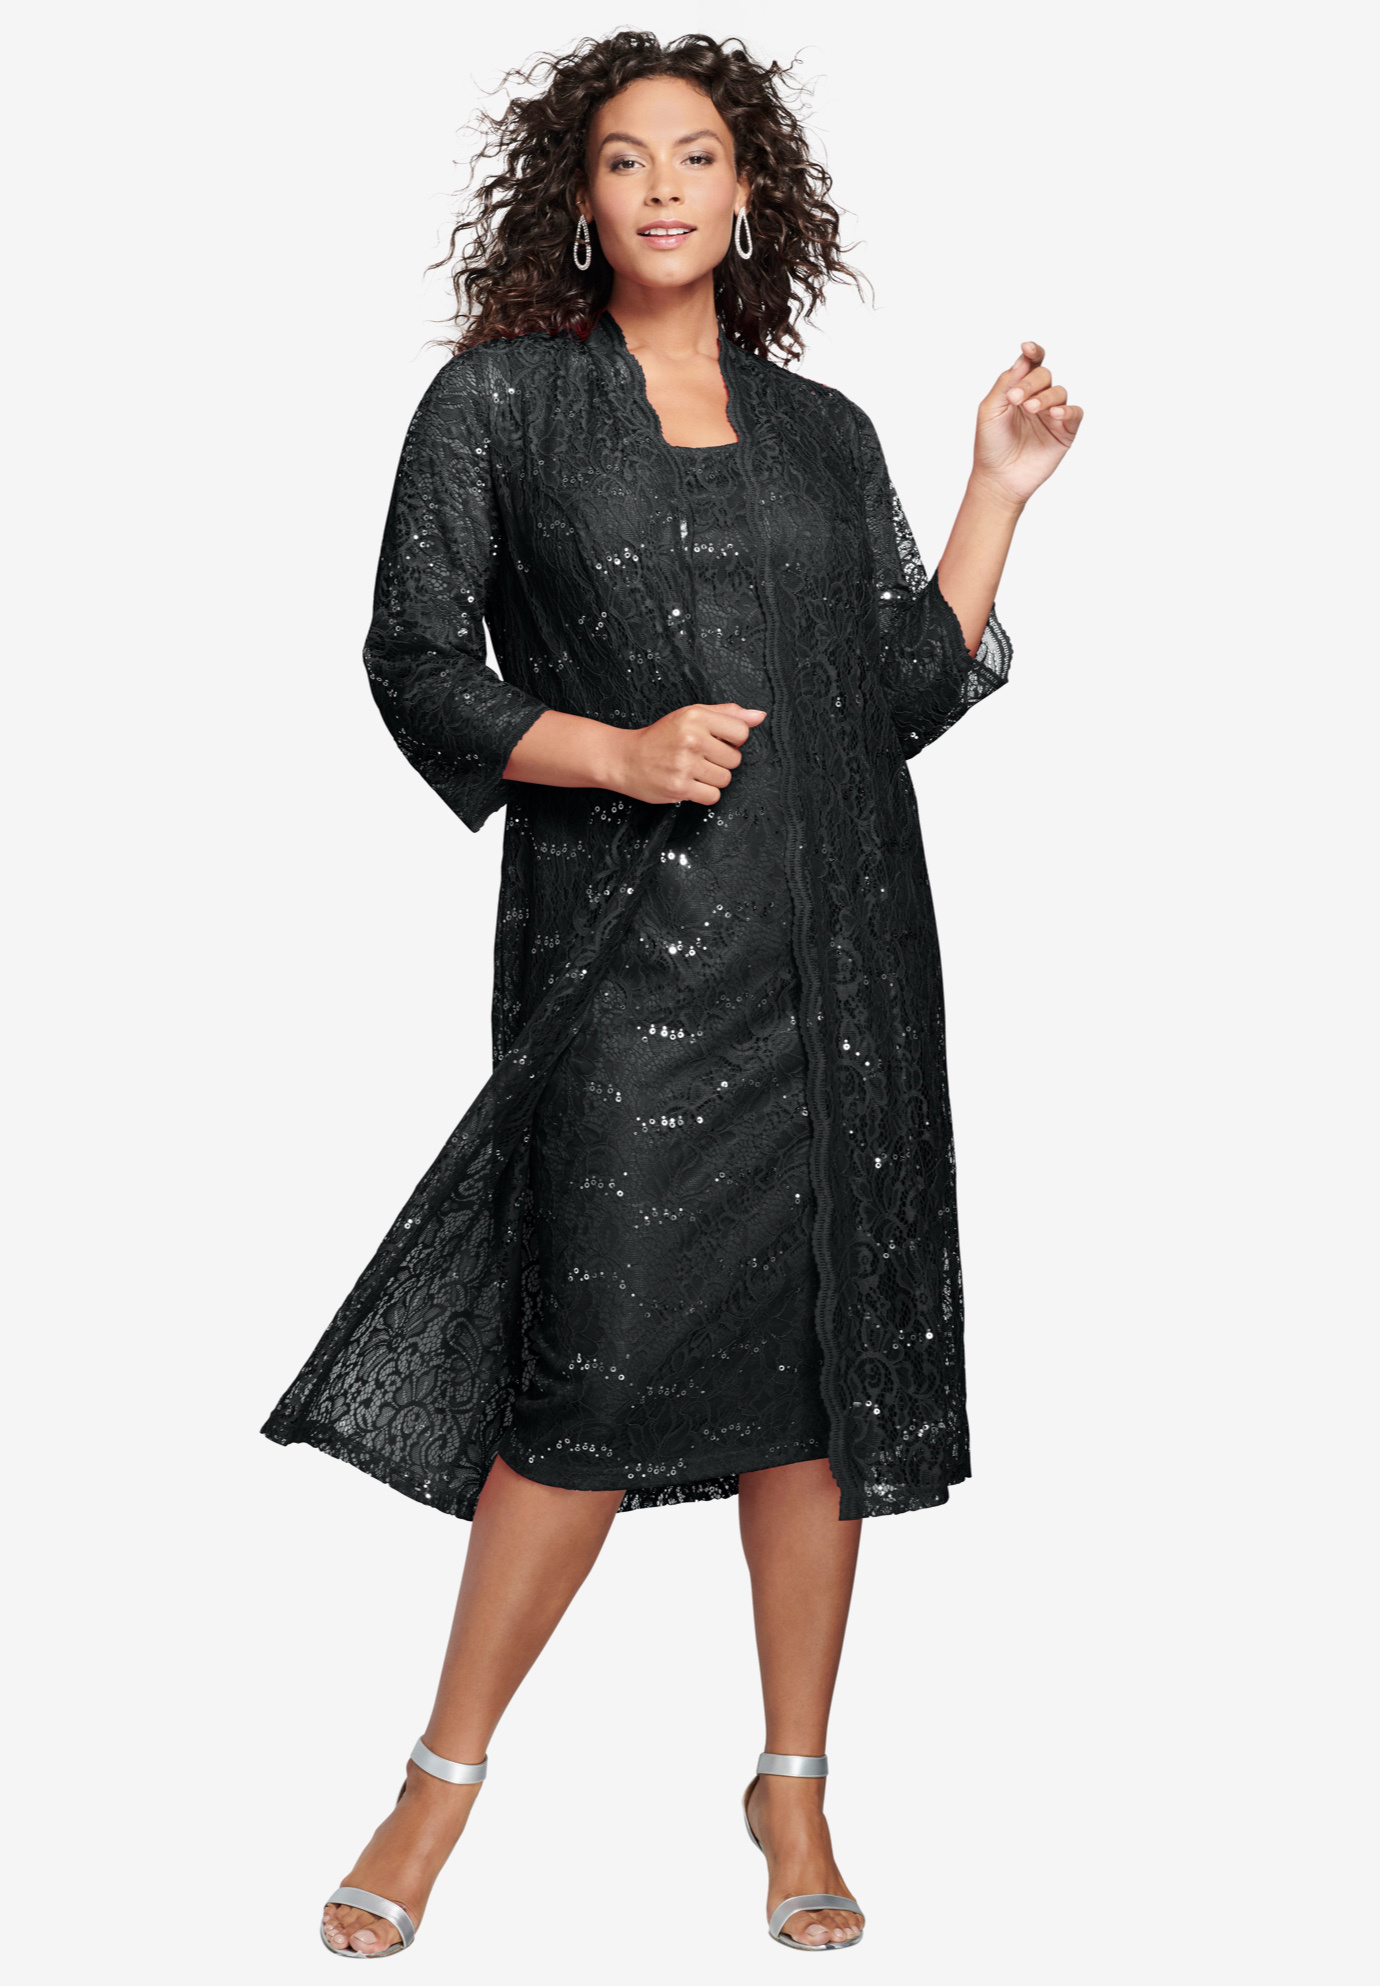 Roamans Womens Plus Size Lace /& Sequin Jacket Dress Set Formal Evening